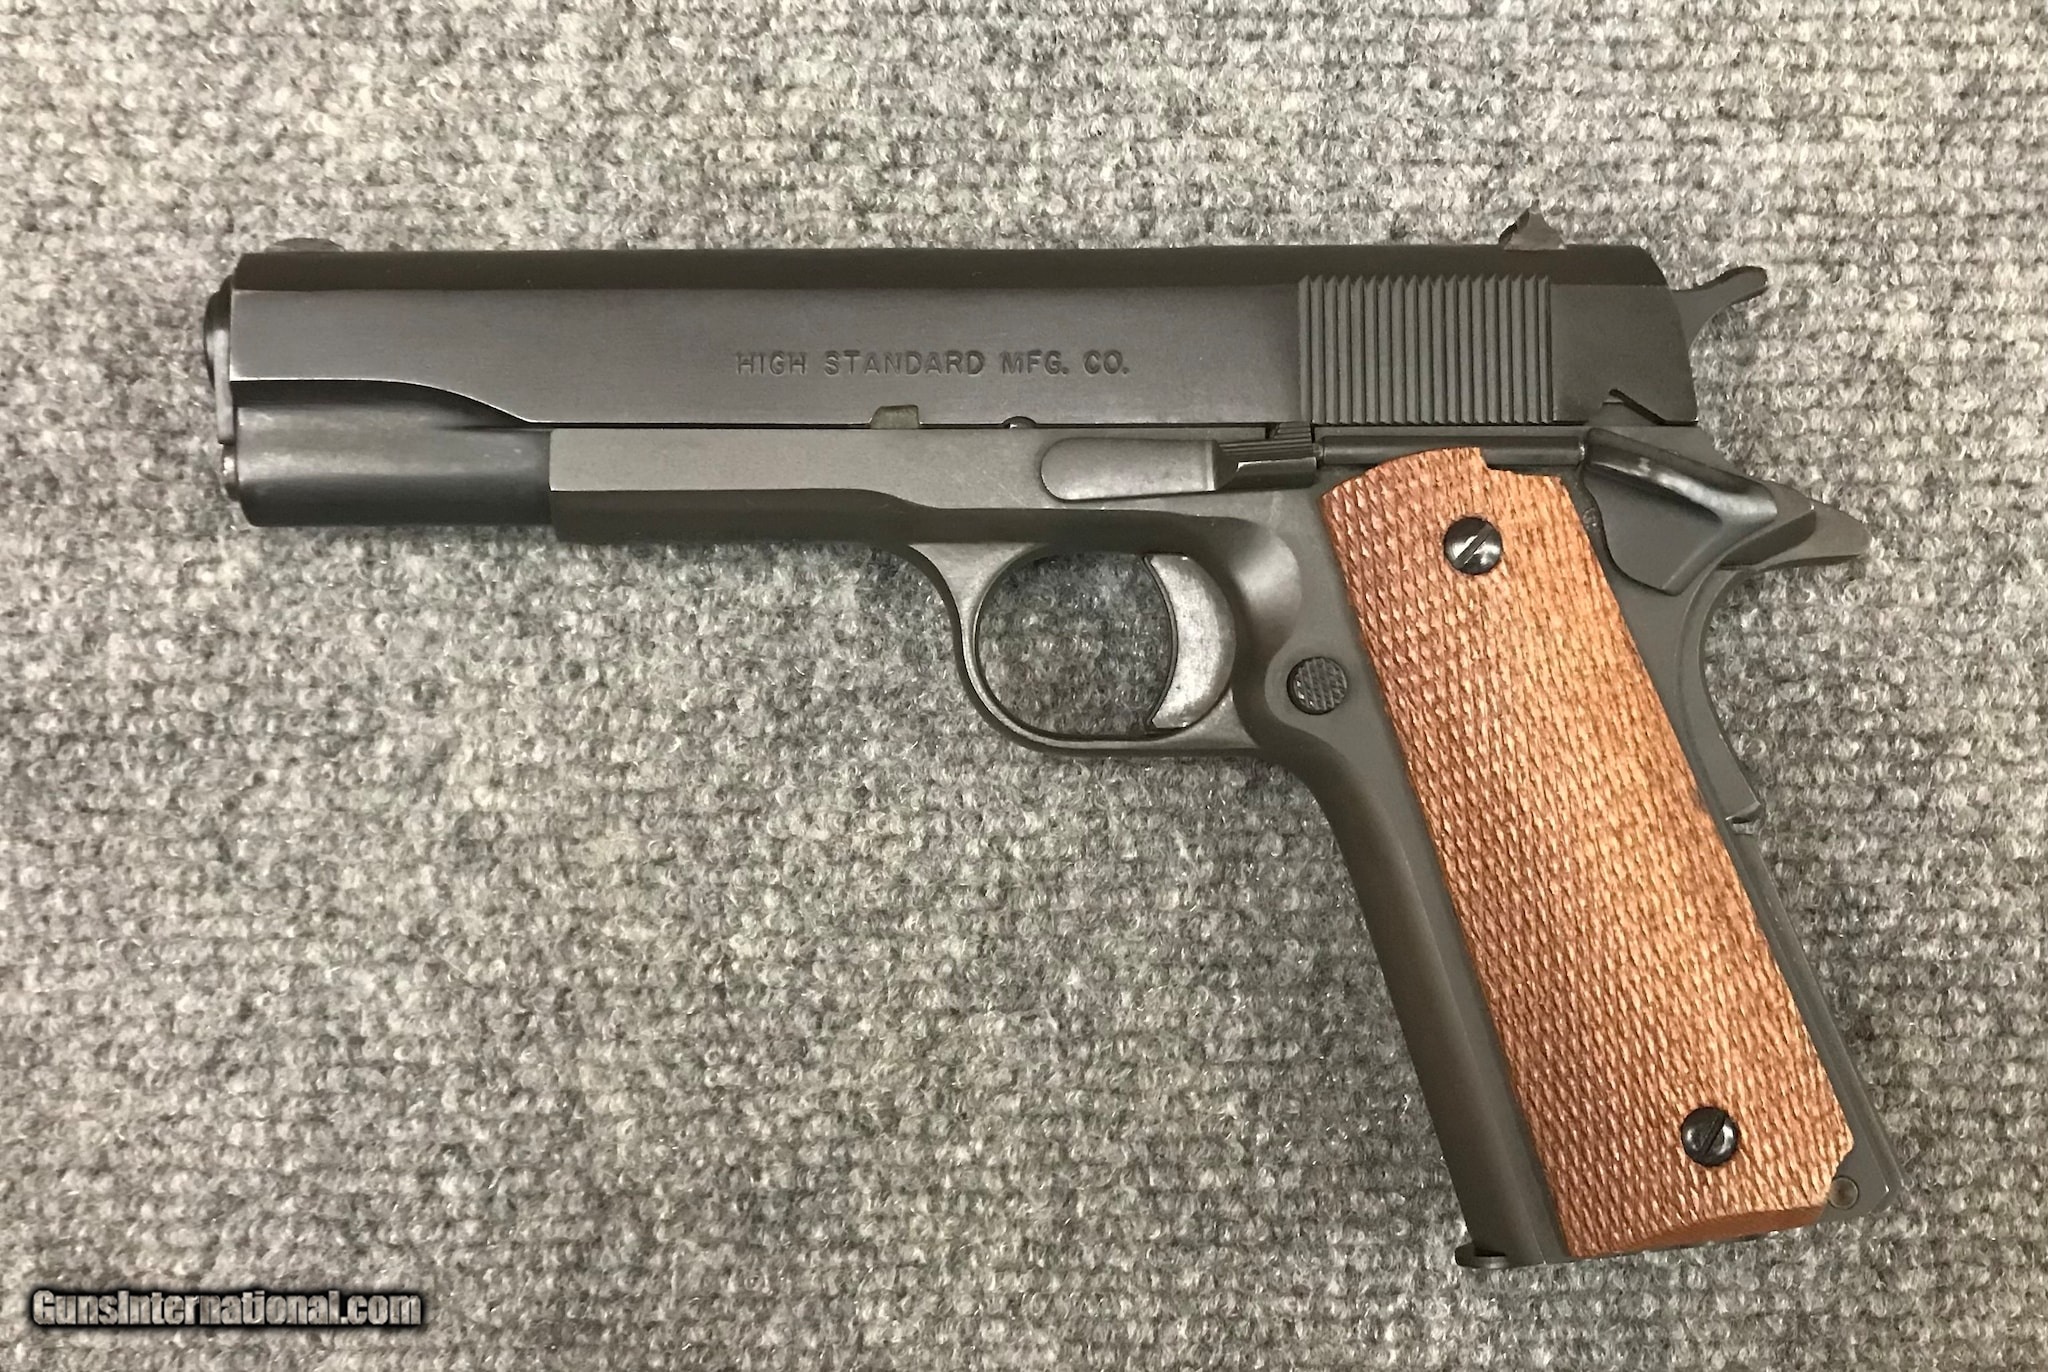 1911 Case Colored – 1911 Pistol For Sale Online – Standard Mfg.